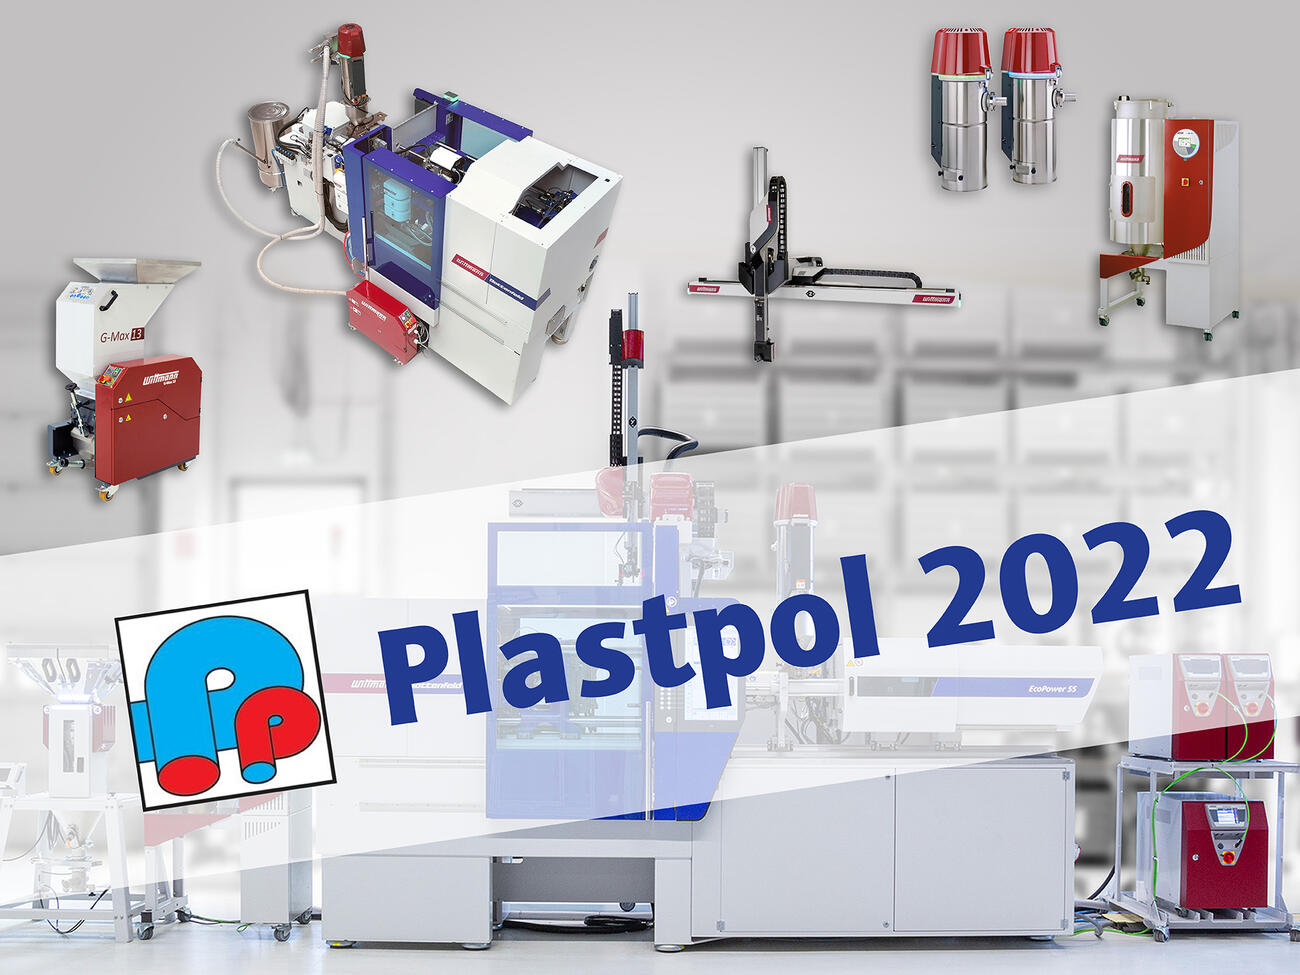 Plastpol 2022 News